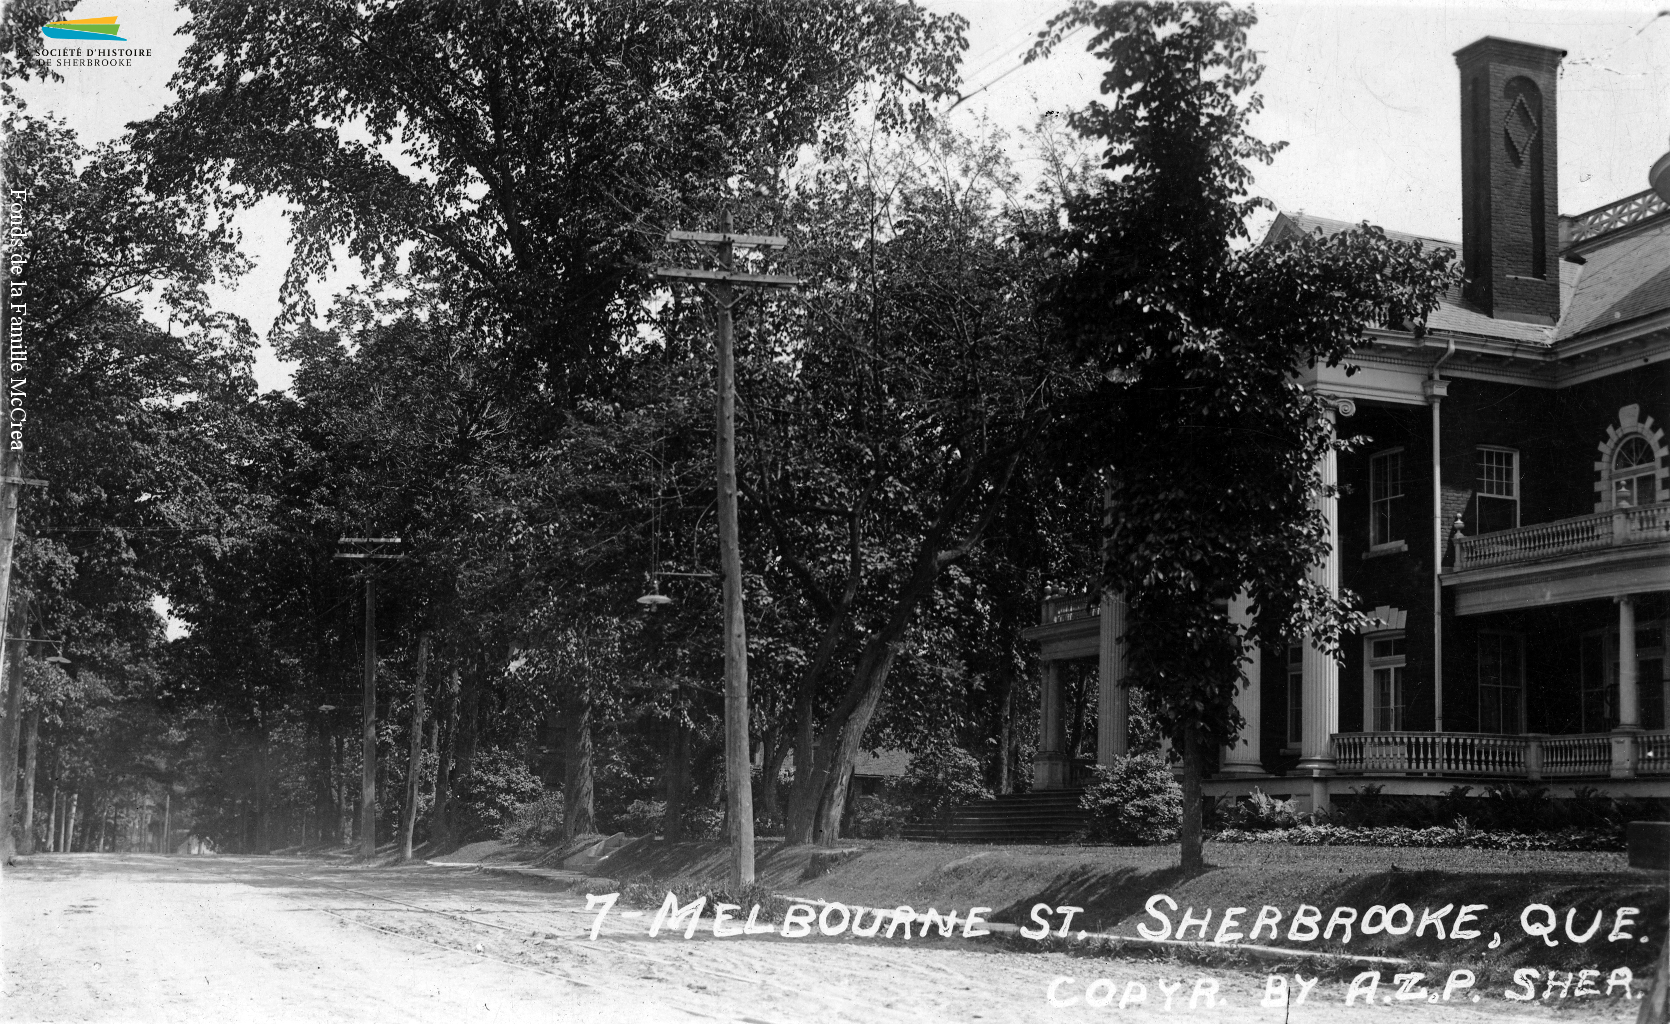 La rue Melbourne (aujourd’hui Prospect), dans les années 1910. Plusieurs riches familles de Sherbrooke habitent le Vieux-Nord, où se concentrent les vastes maisons.